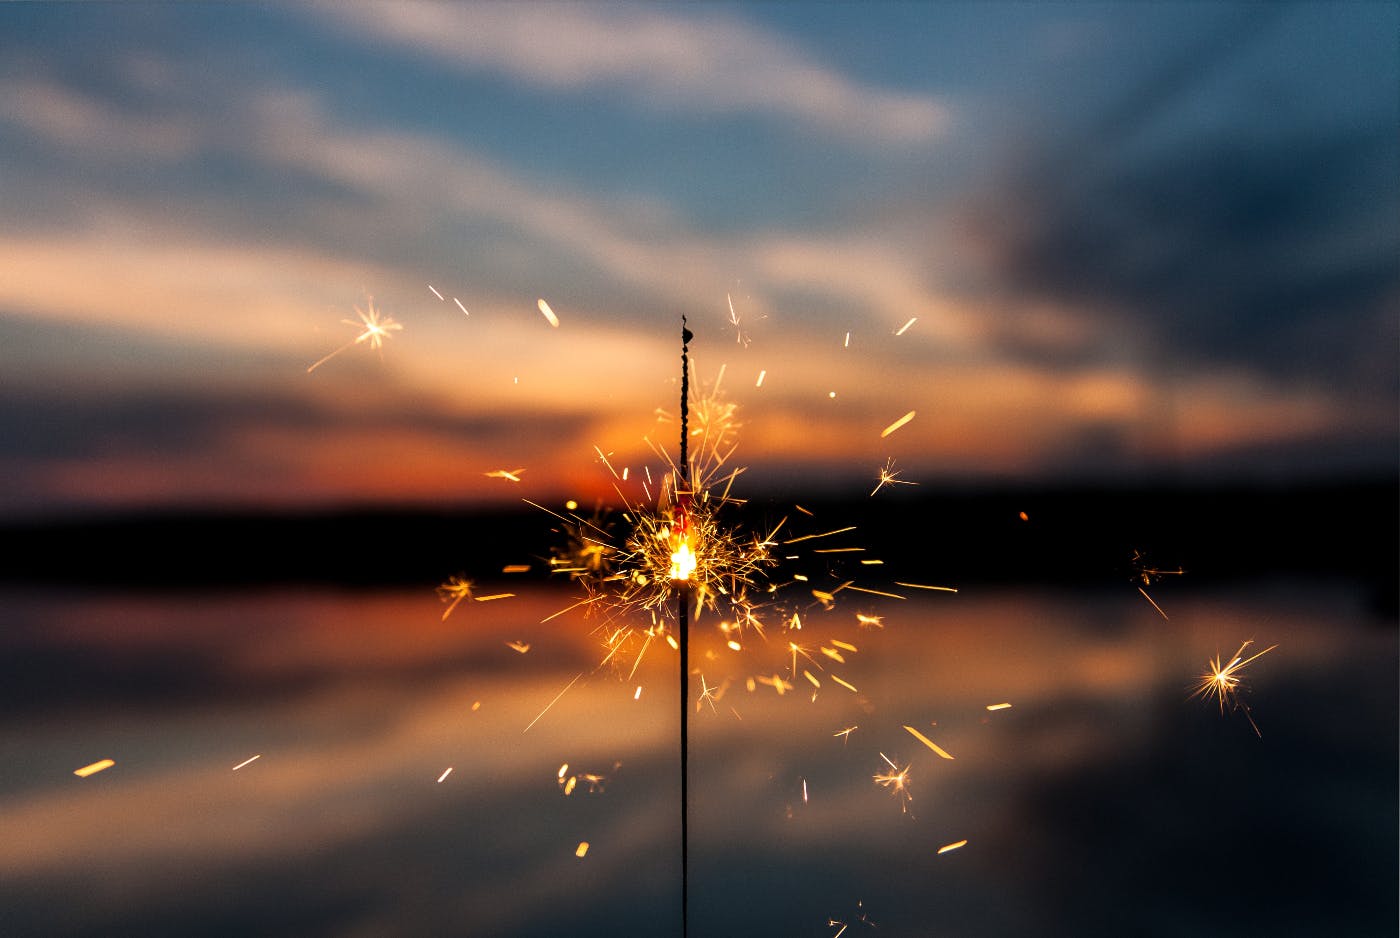 A half burned sparkler against a setting sun